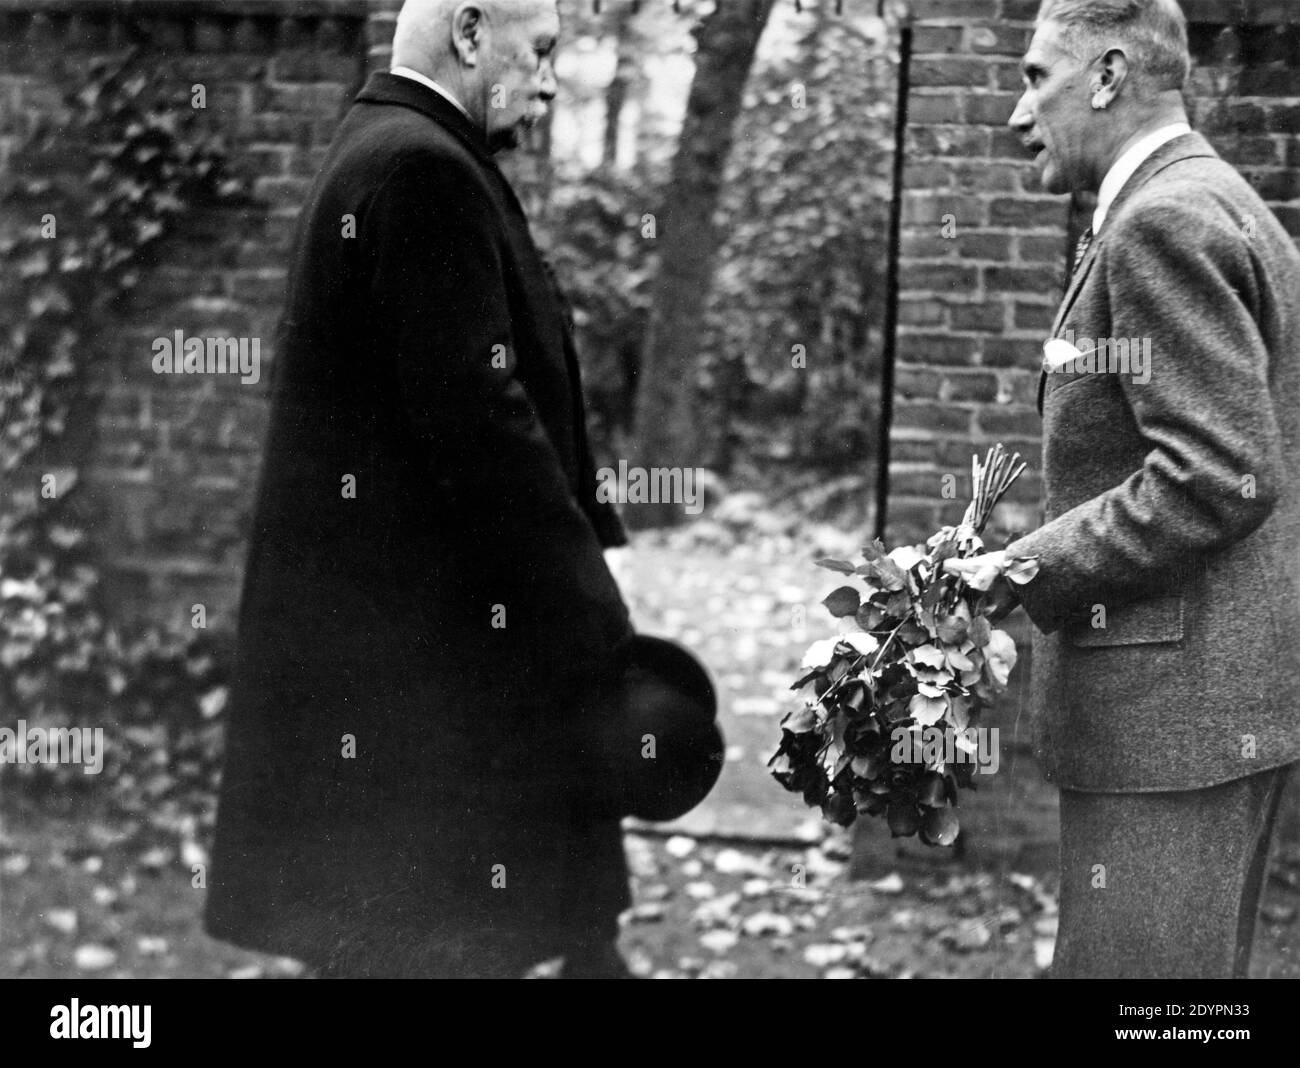 Paul von Hindenburg with Franz von Papen, about 1932, Gemany Stock Photo